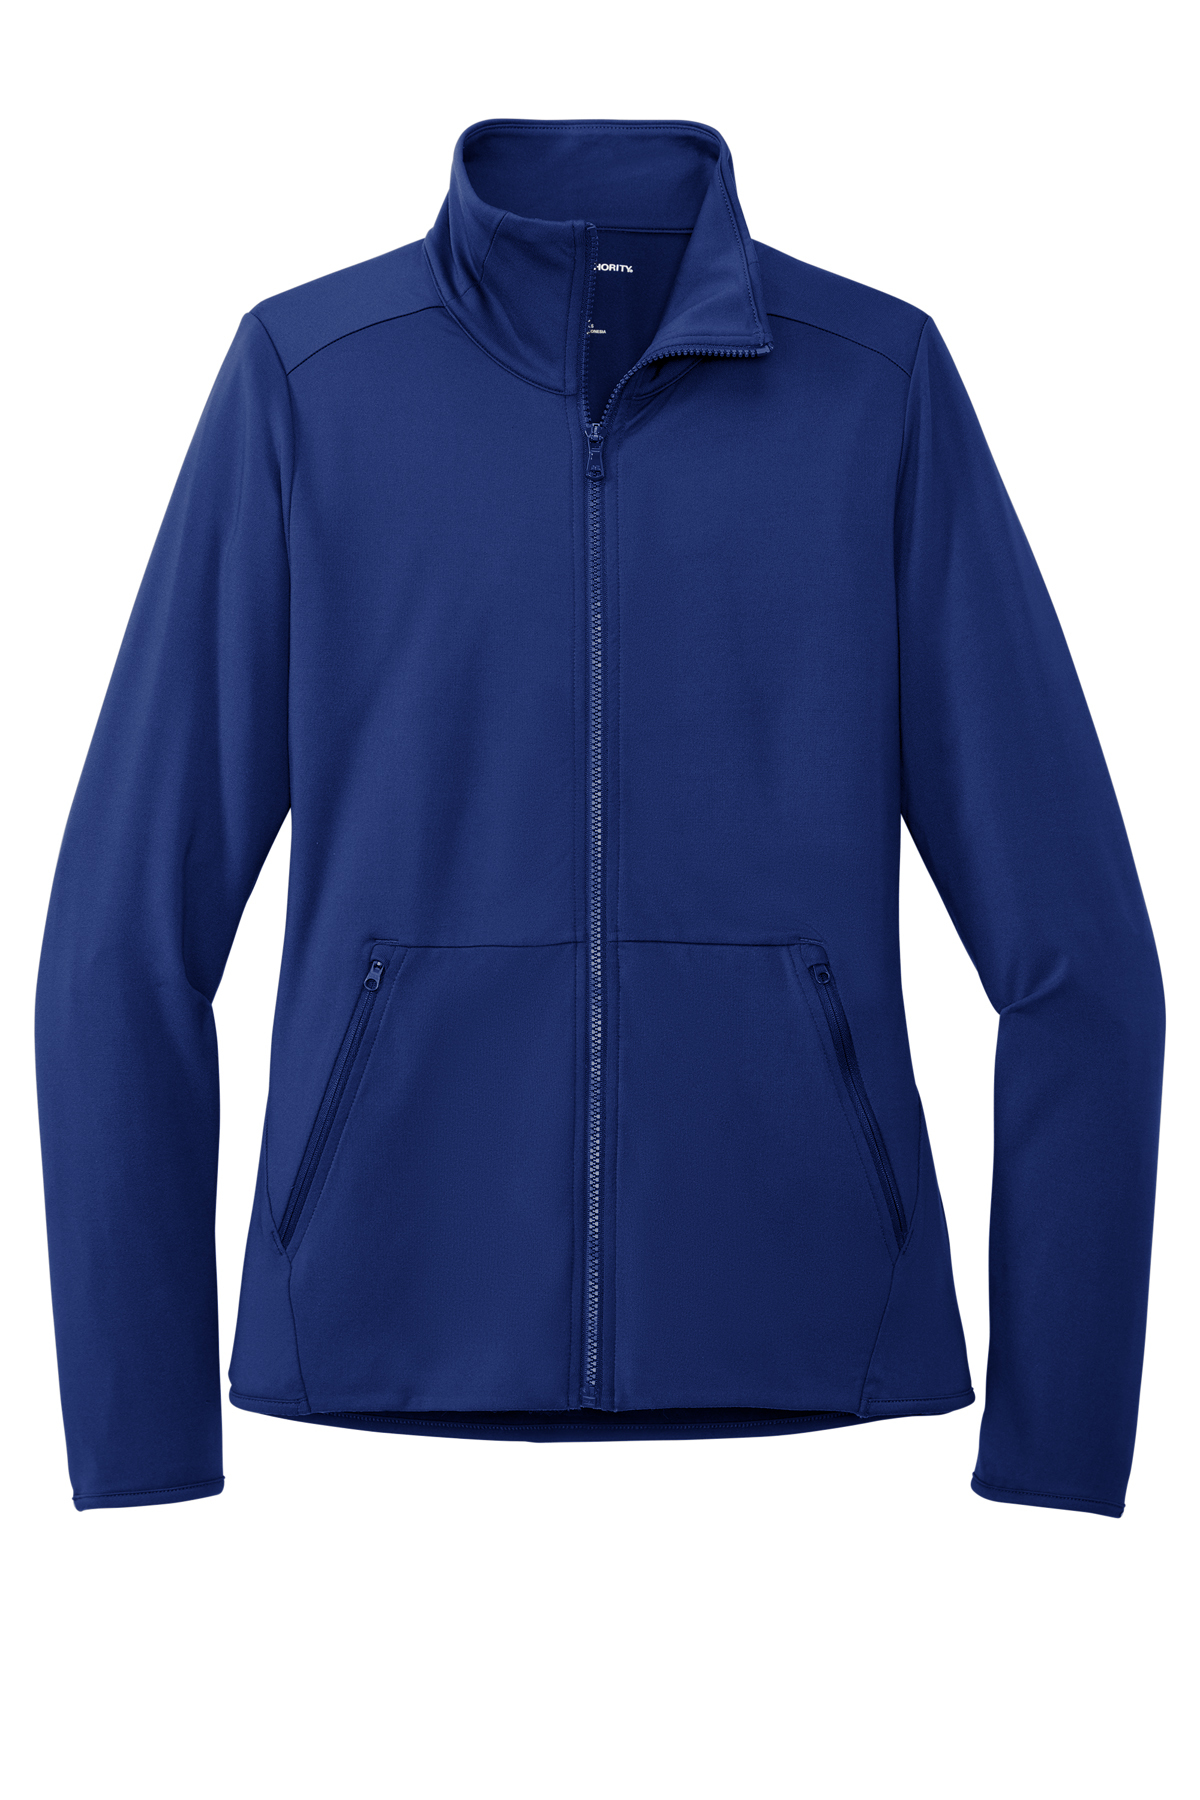 Port Authority Ladies Accord Stretch Fleece Full-Zip, Product